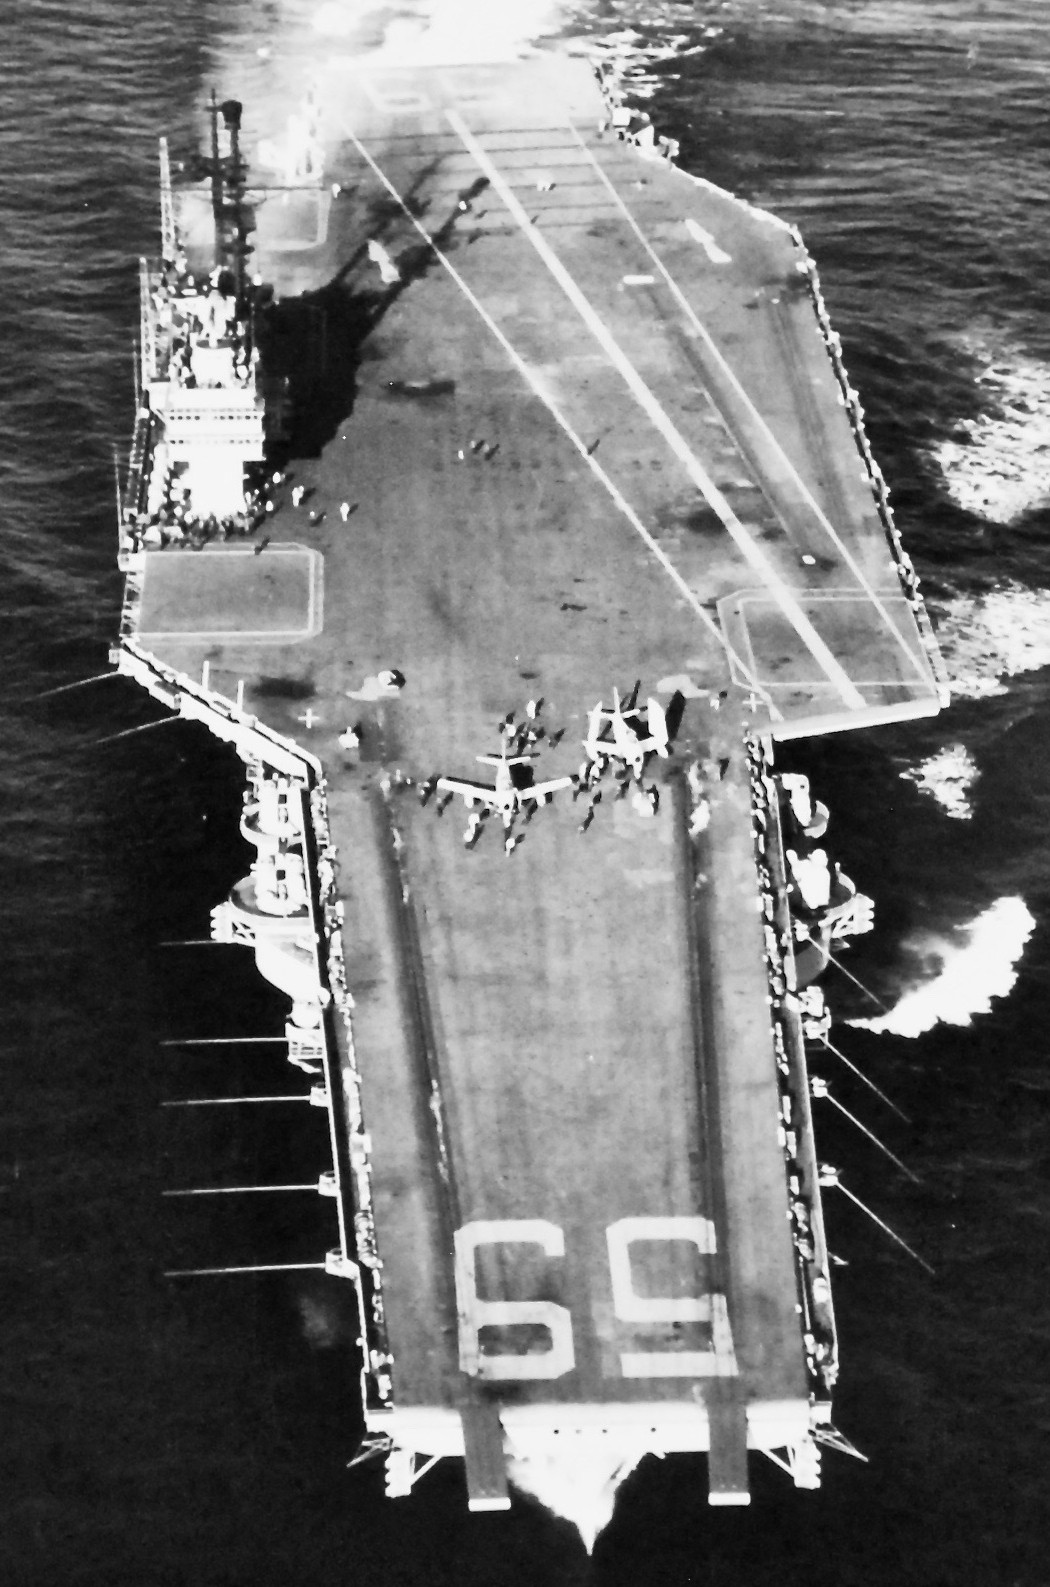 cv-59 uss forrestal aircraft carrier us navy 22